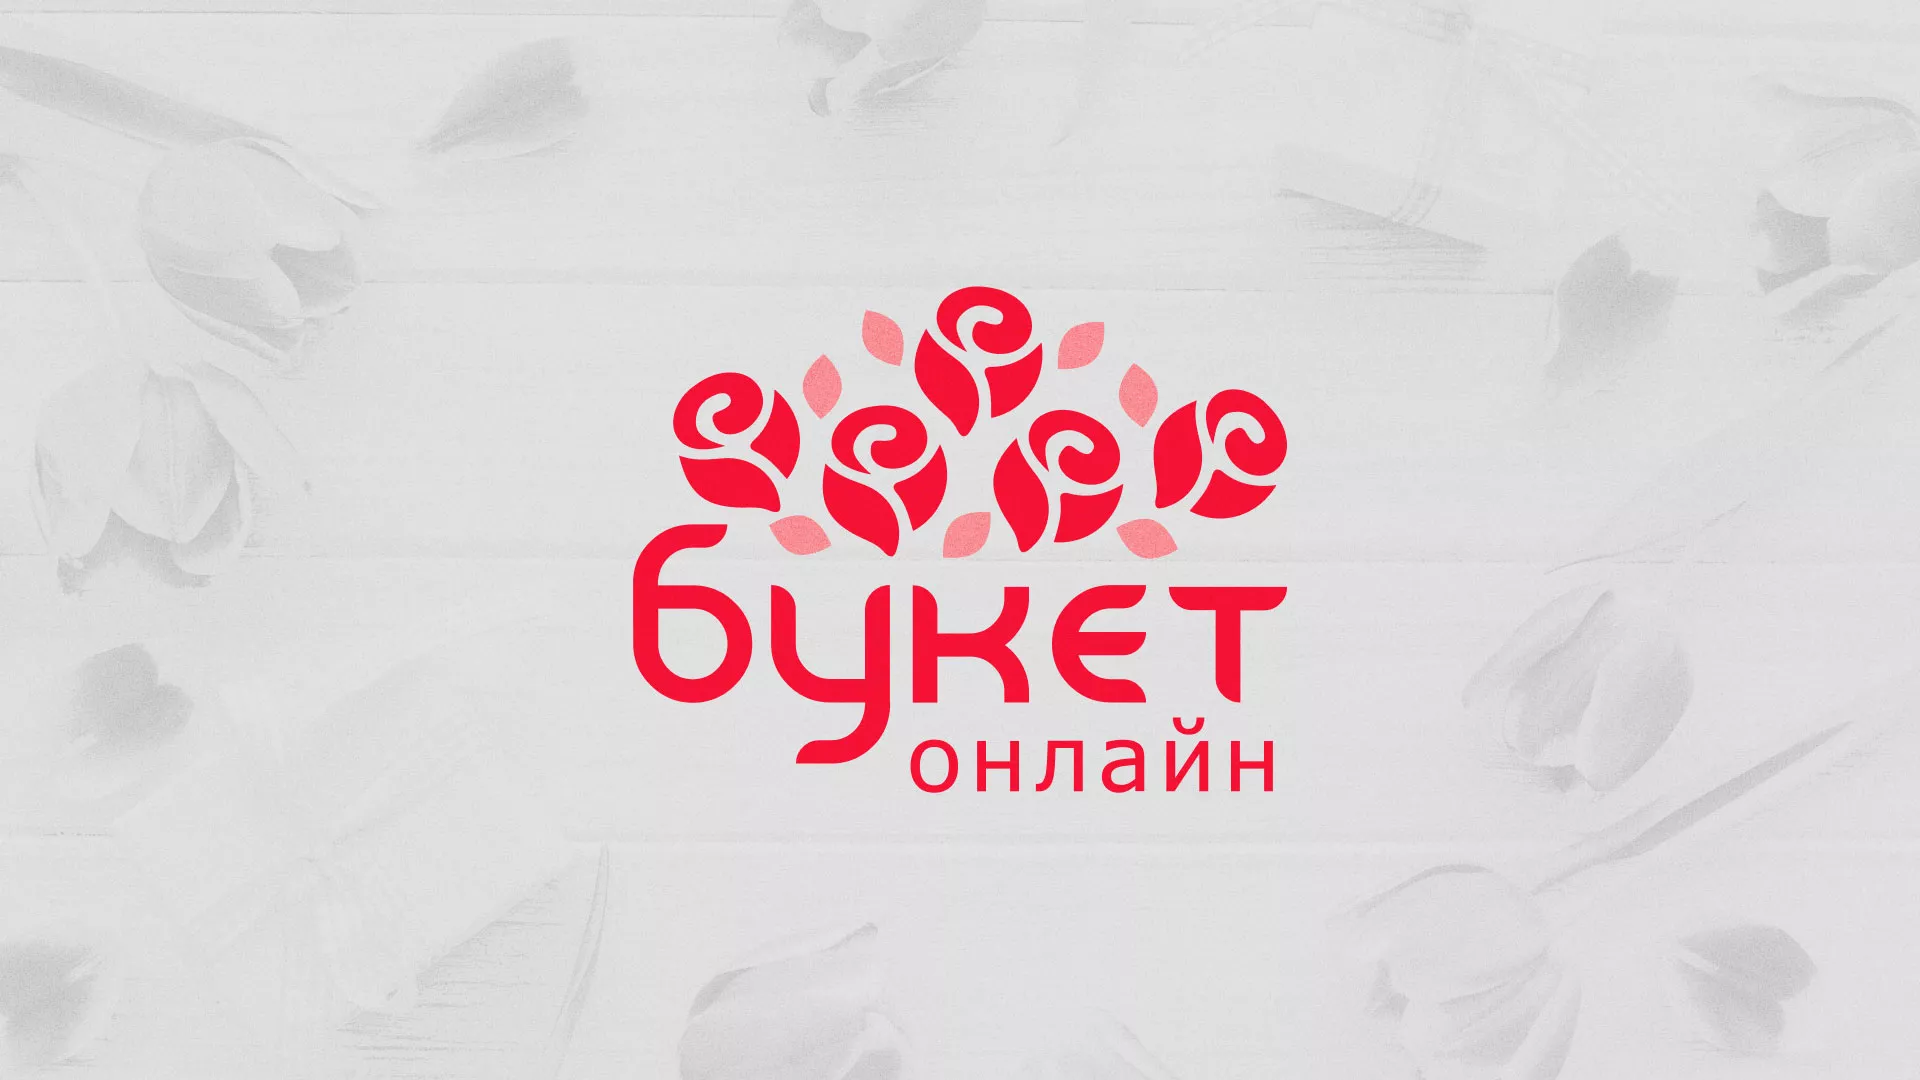 Создание интернет-магазина «Букет-онлайн» по цветам в Партизанске